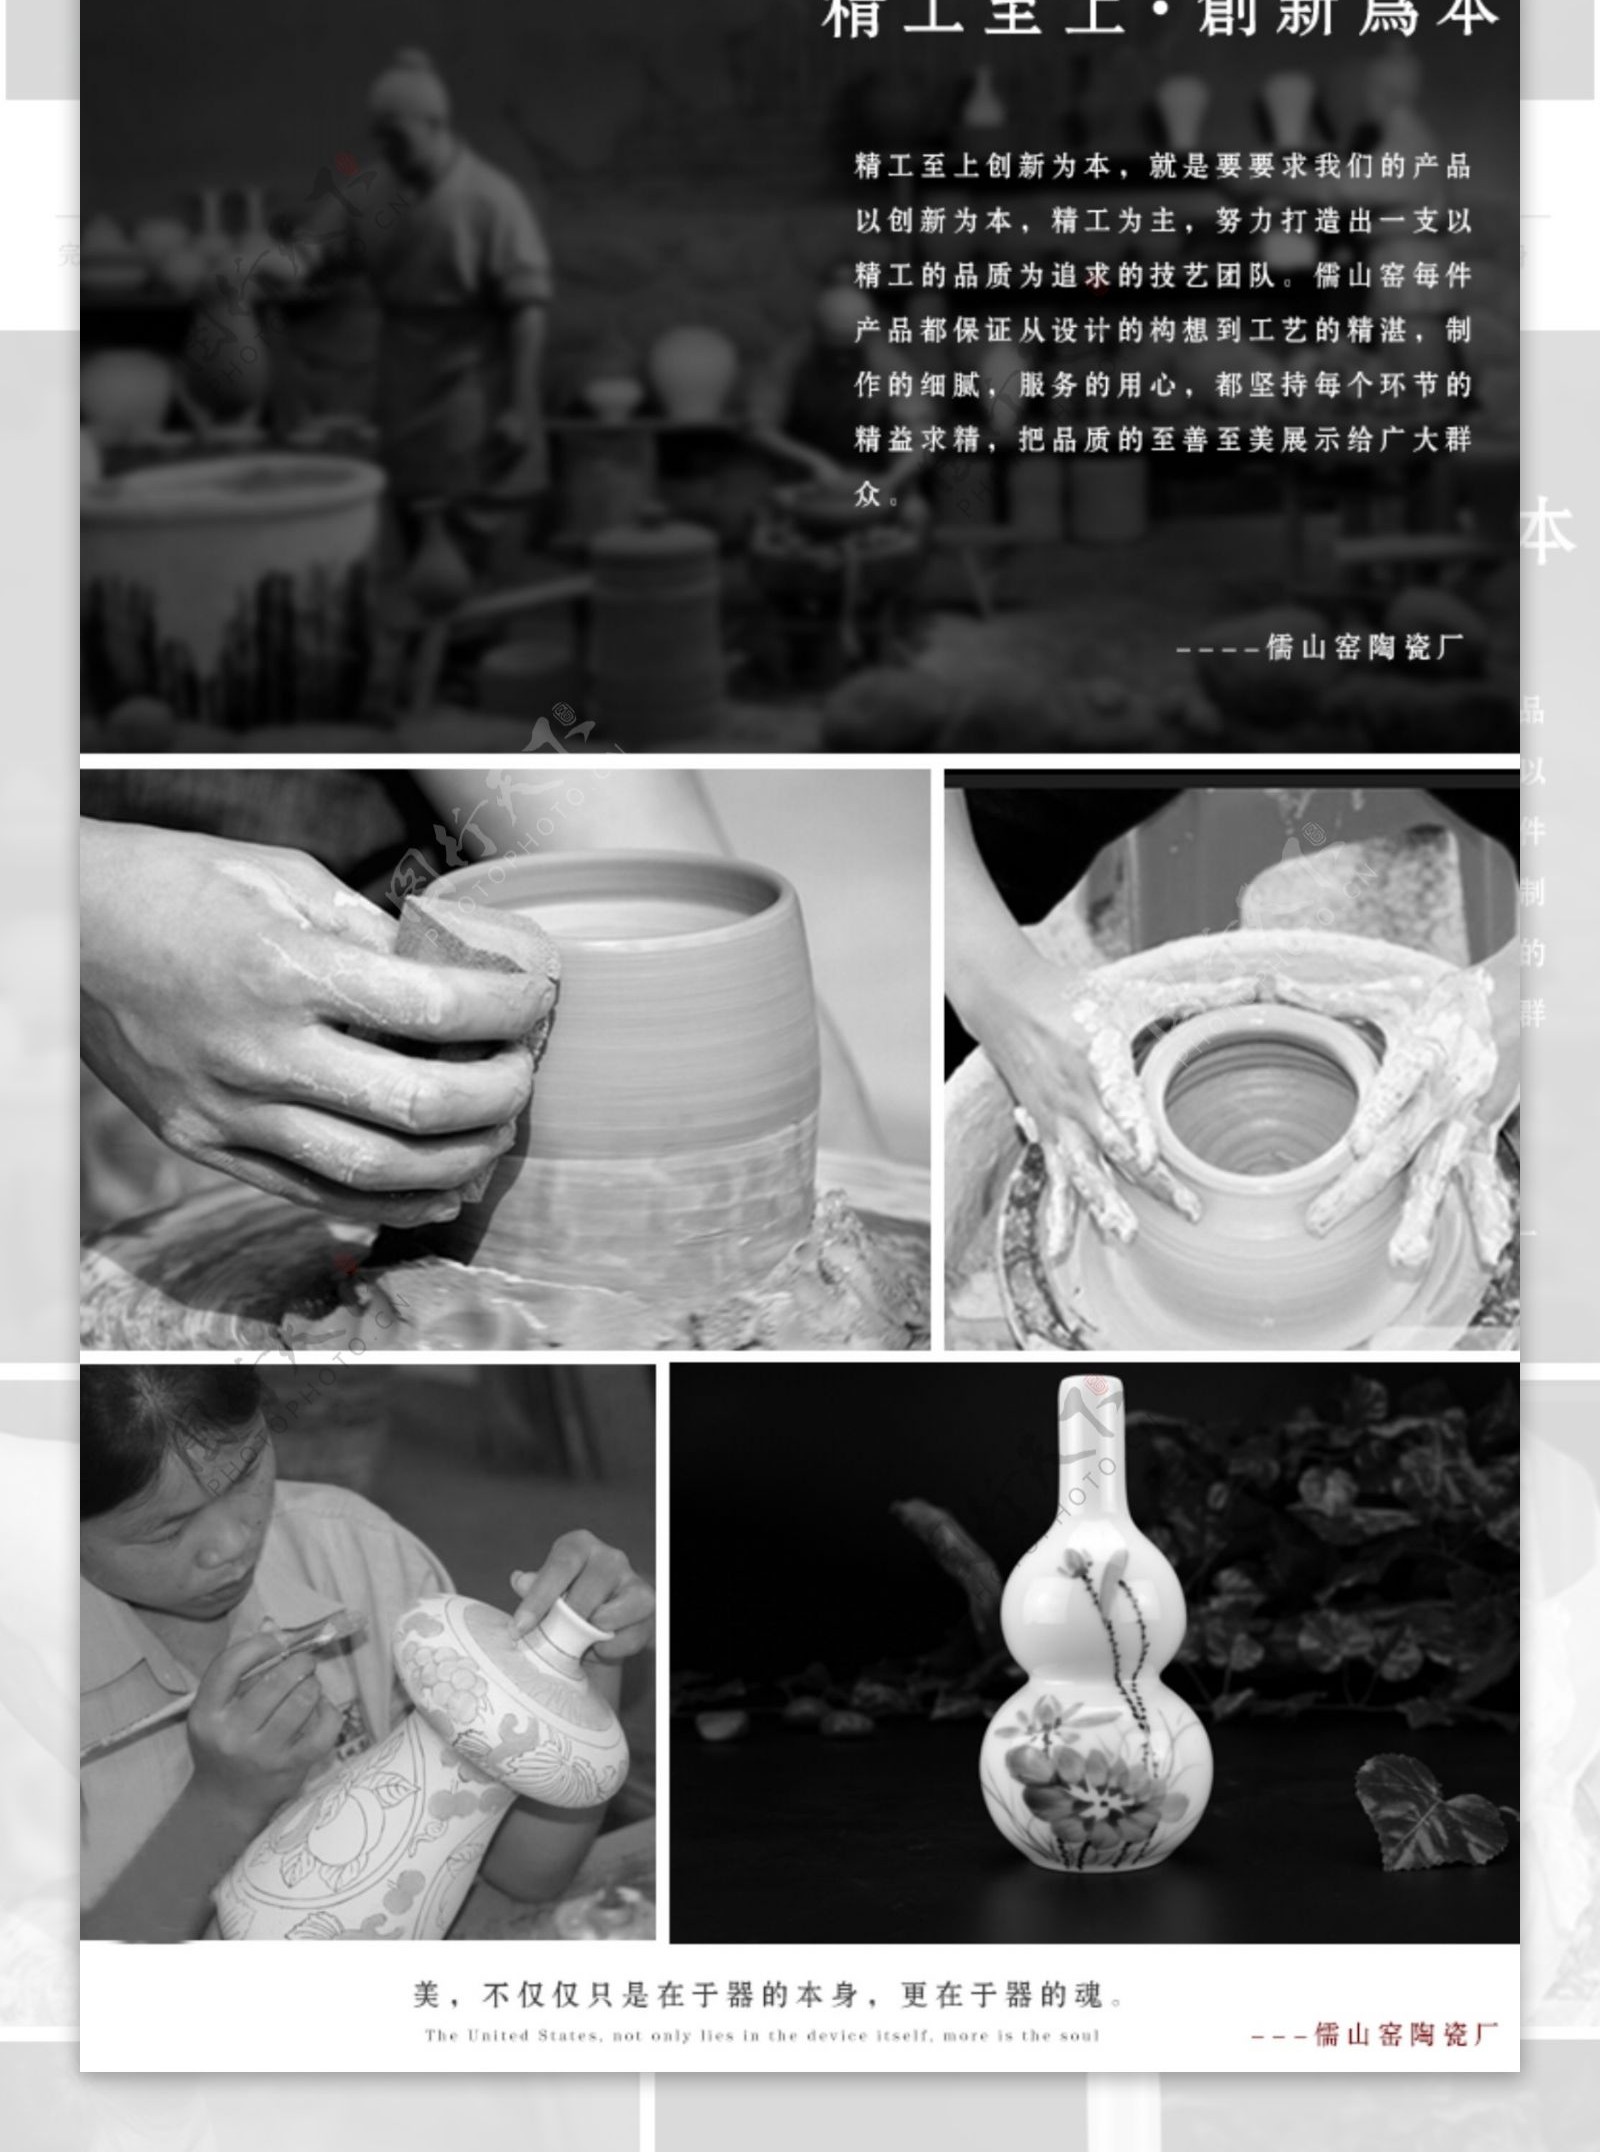 陶瓷花瓶详情页设计